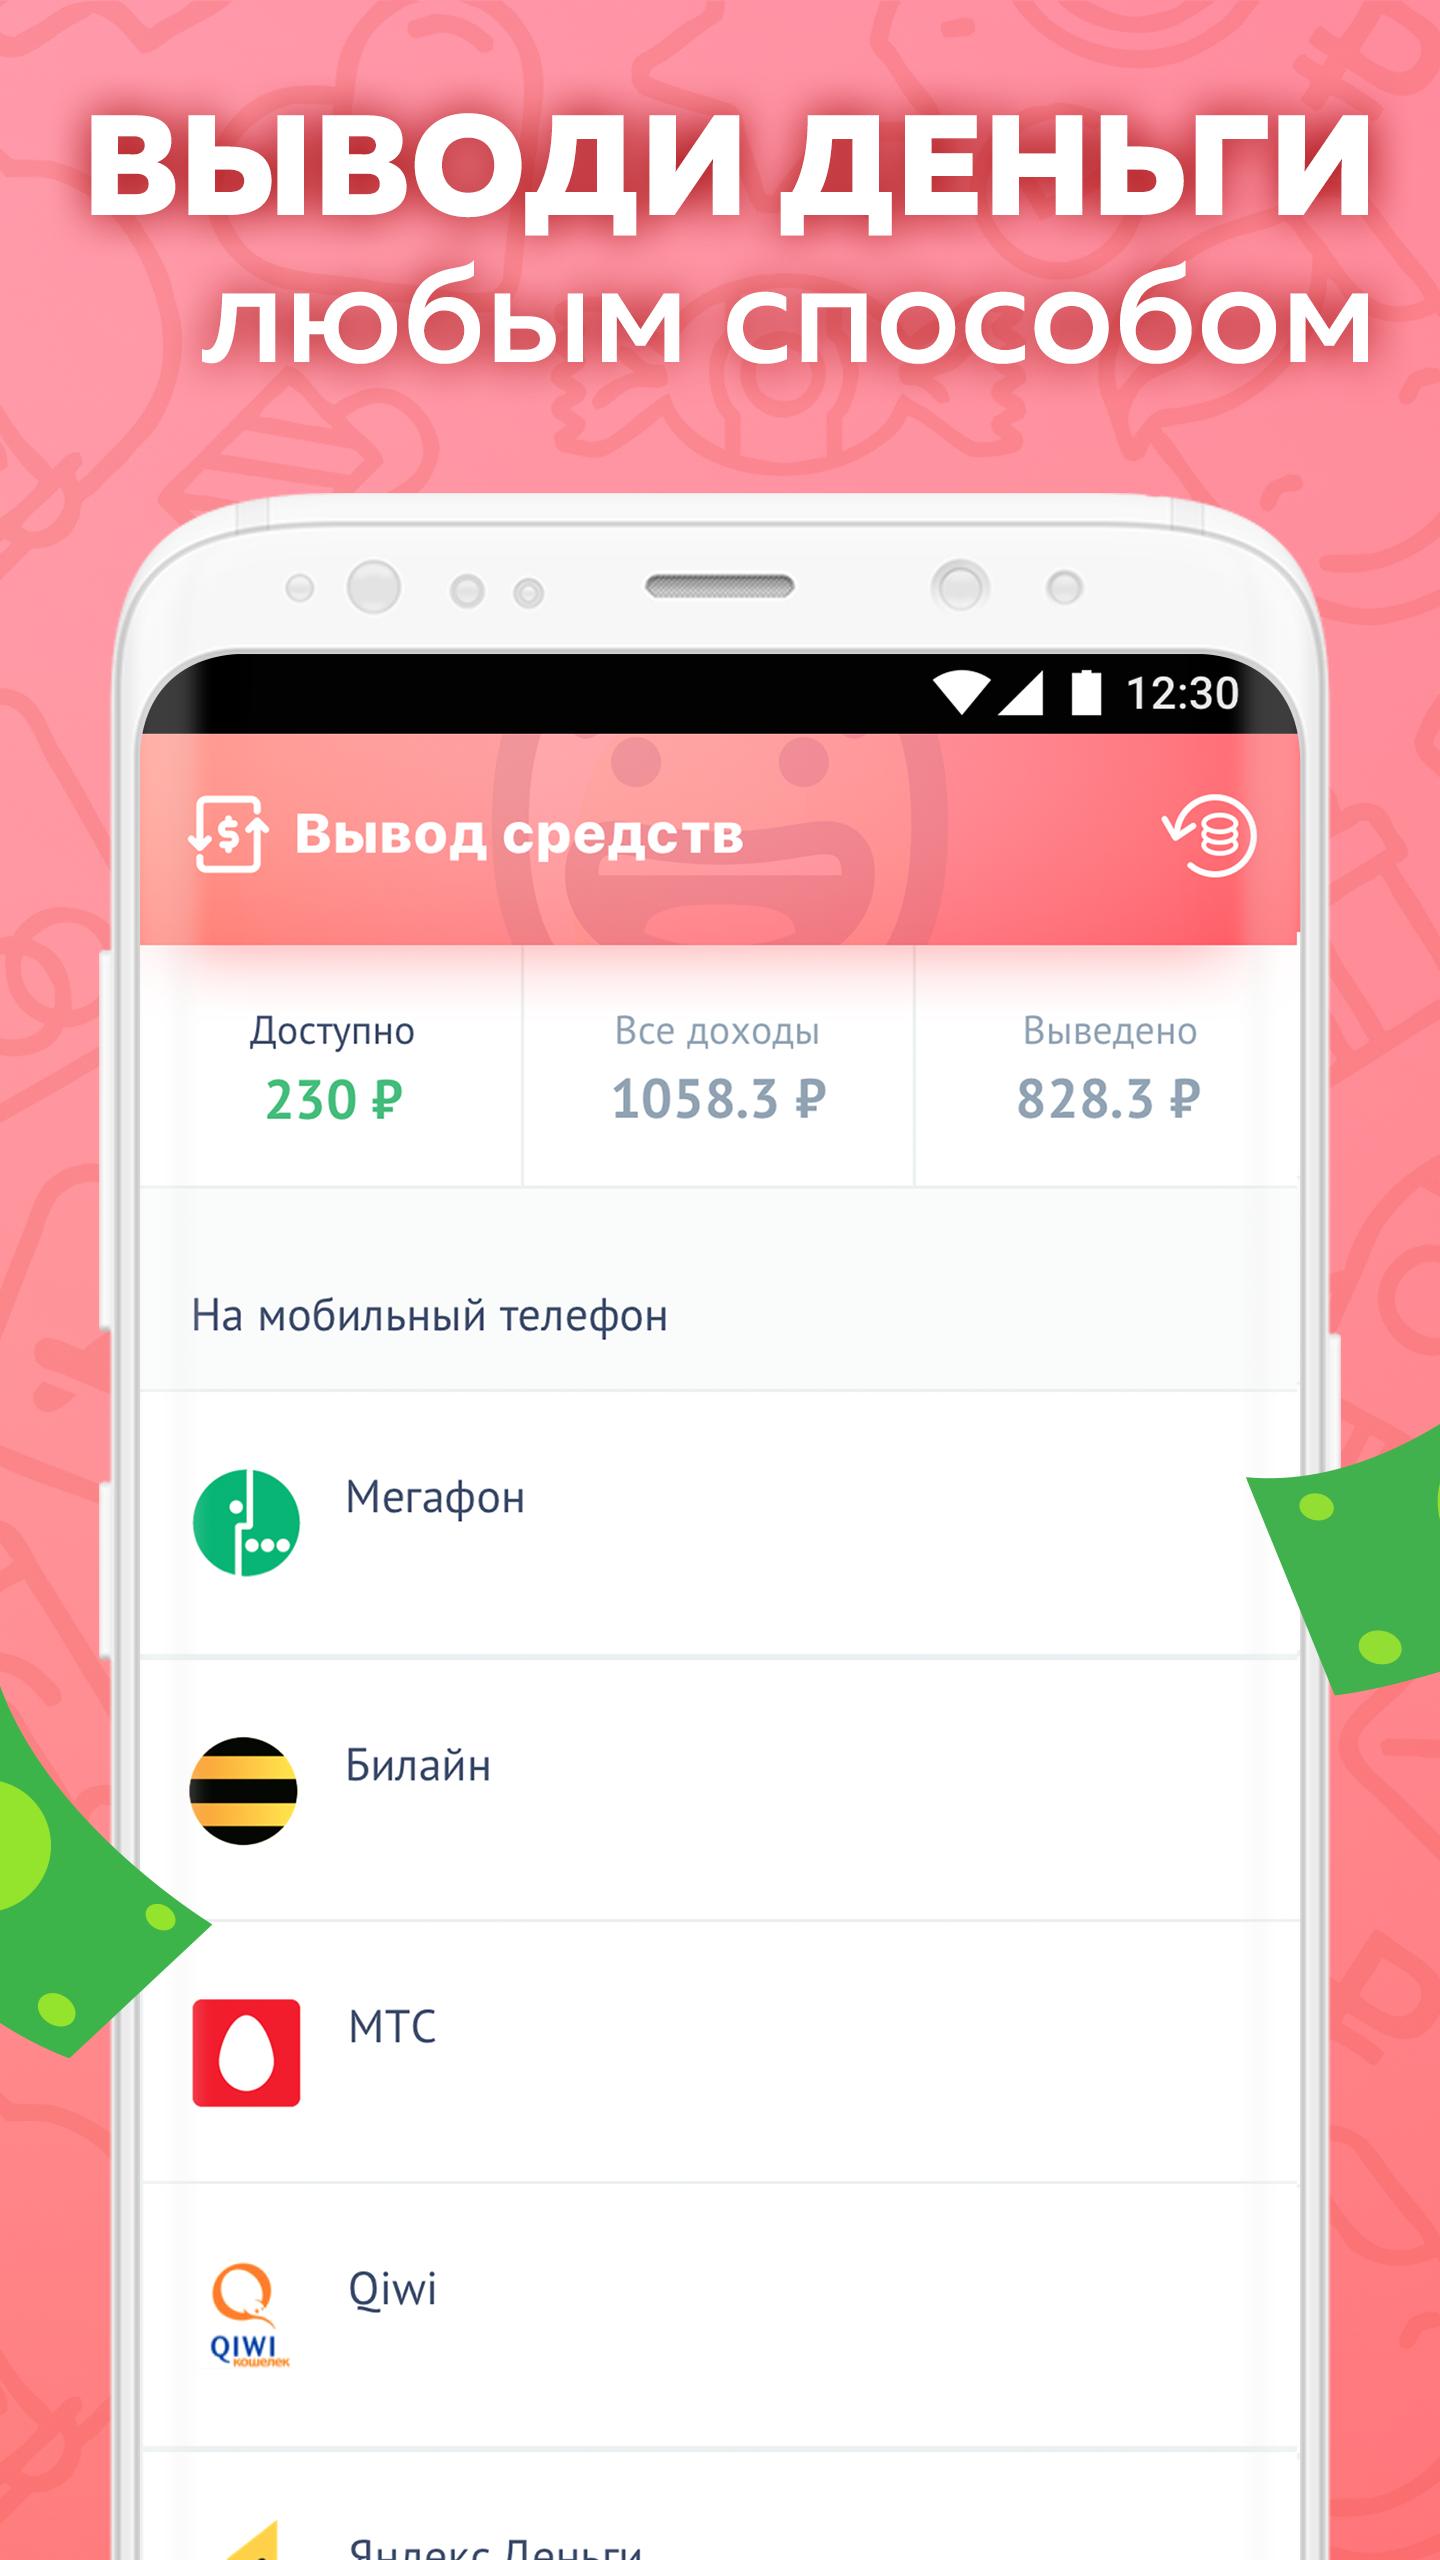 Appbonus — мобильный заработок денег без вложений 4.0.4806 Screenshot 3